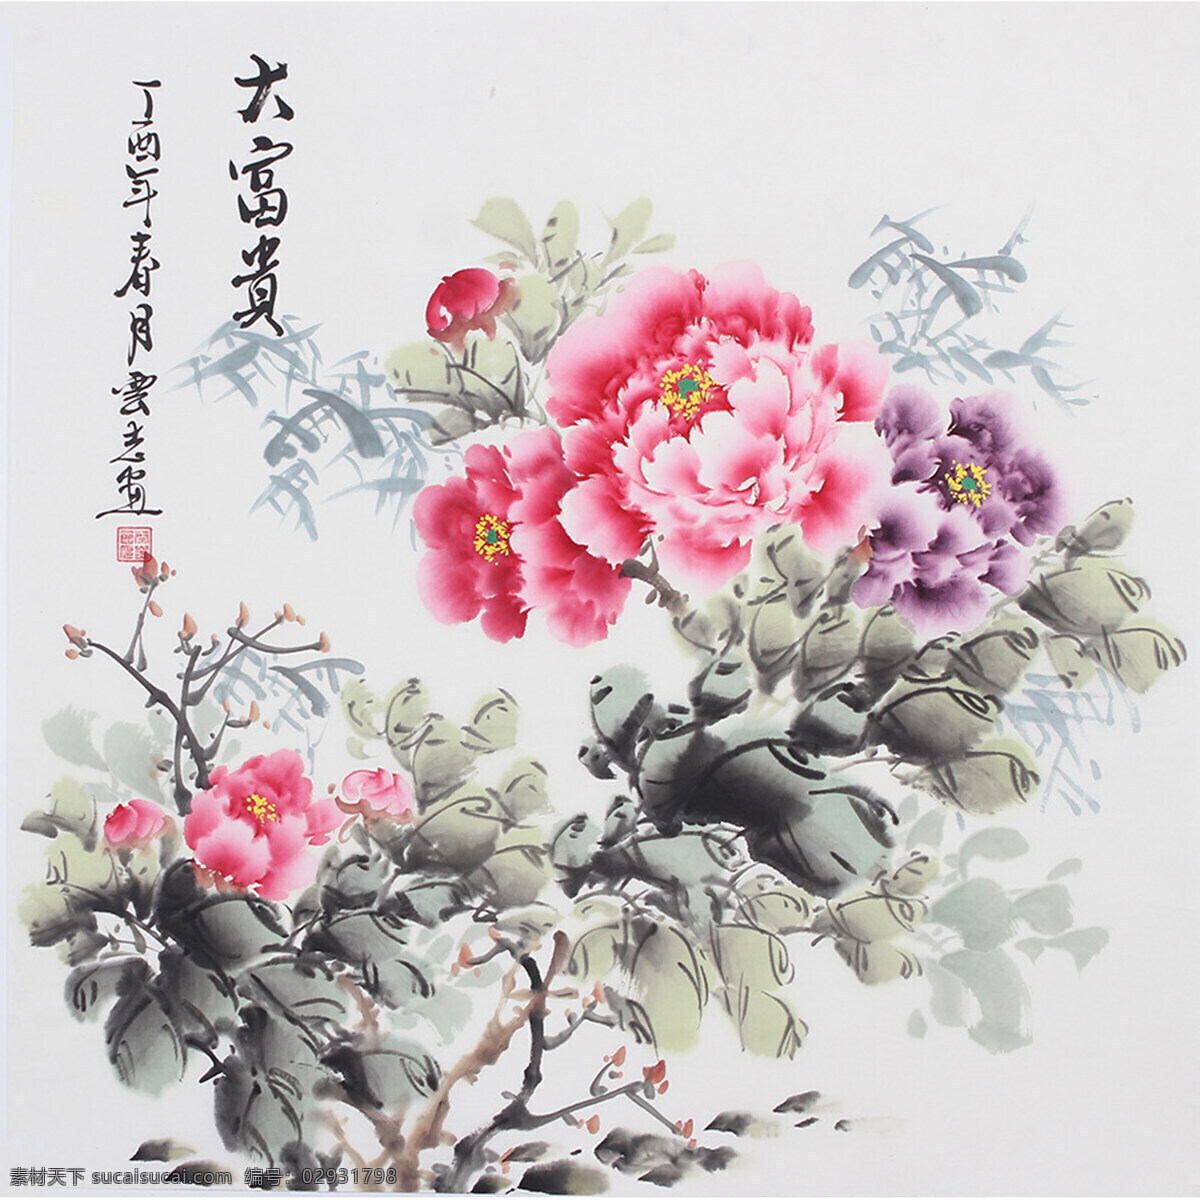 水墨牡丹 花卉 工笔 花鸟 植物 国画 工笔花卉 文化艺术 绘画书法